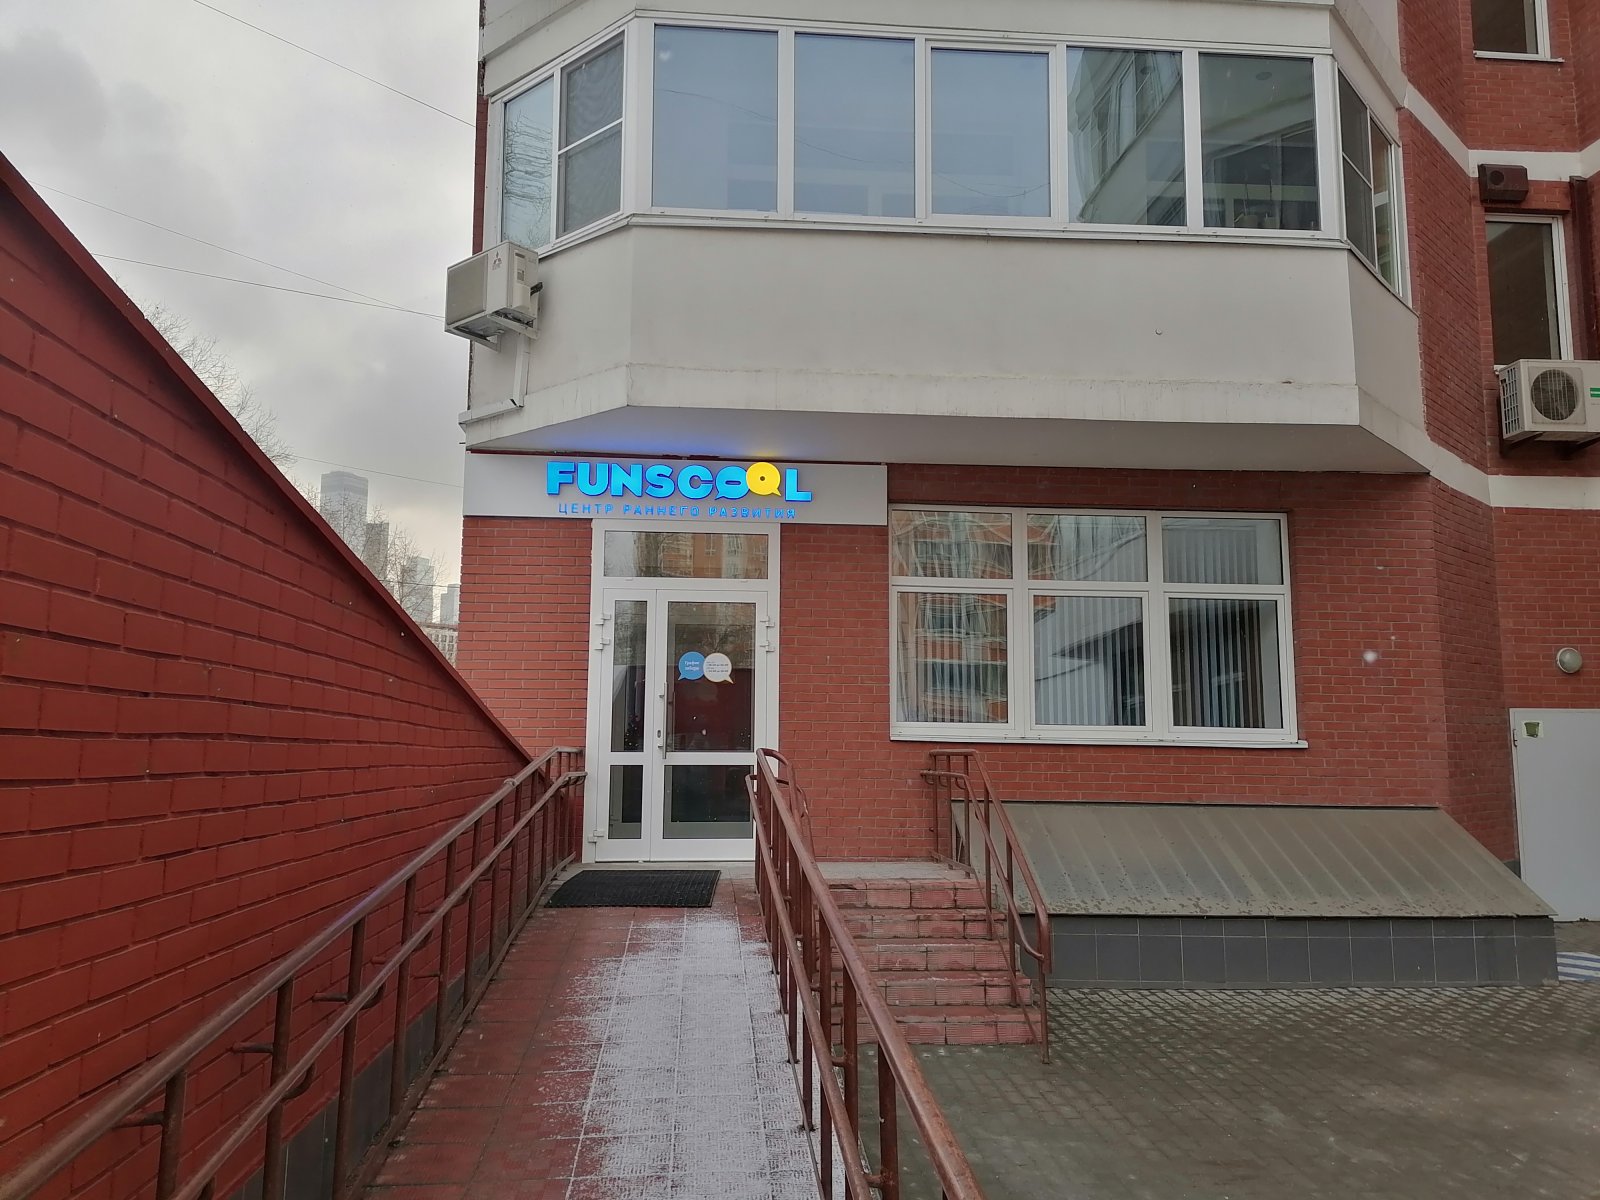 Фанскул, частная школа и детский сад, Новозаводская улица, 8, 1 этаж